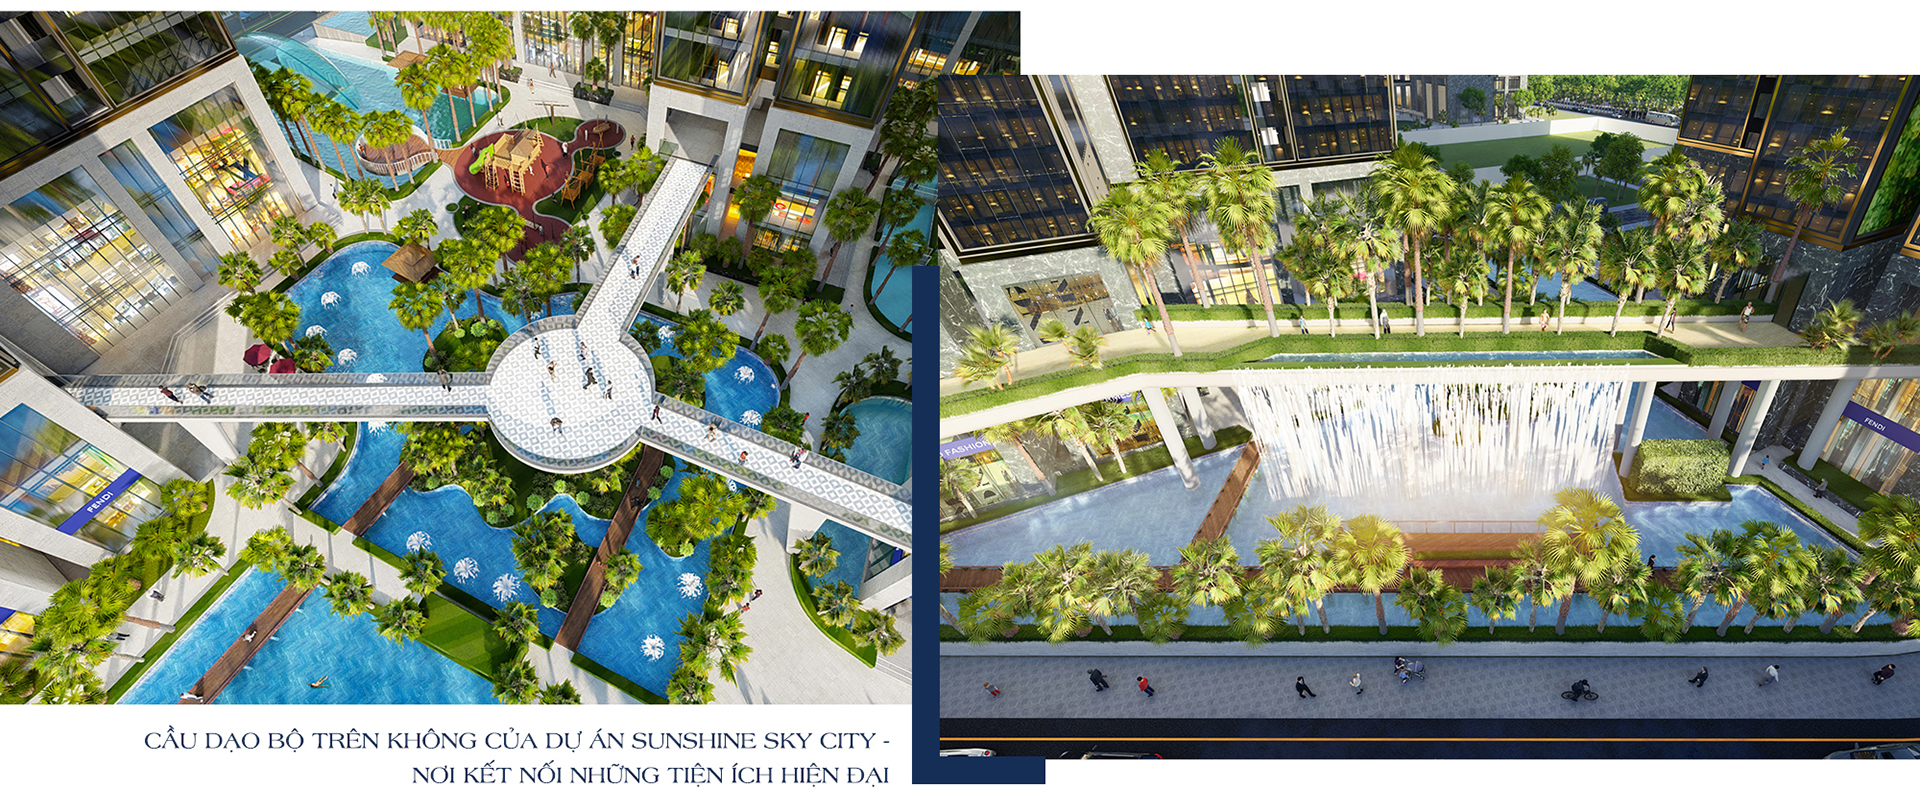 Sunshine Sky City: Tái định nghĩa chuẩn sống tầm cao mới giữa phố thị sầm uất - 15